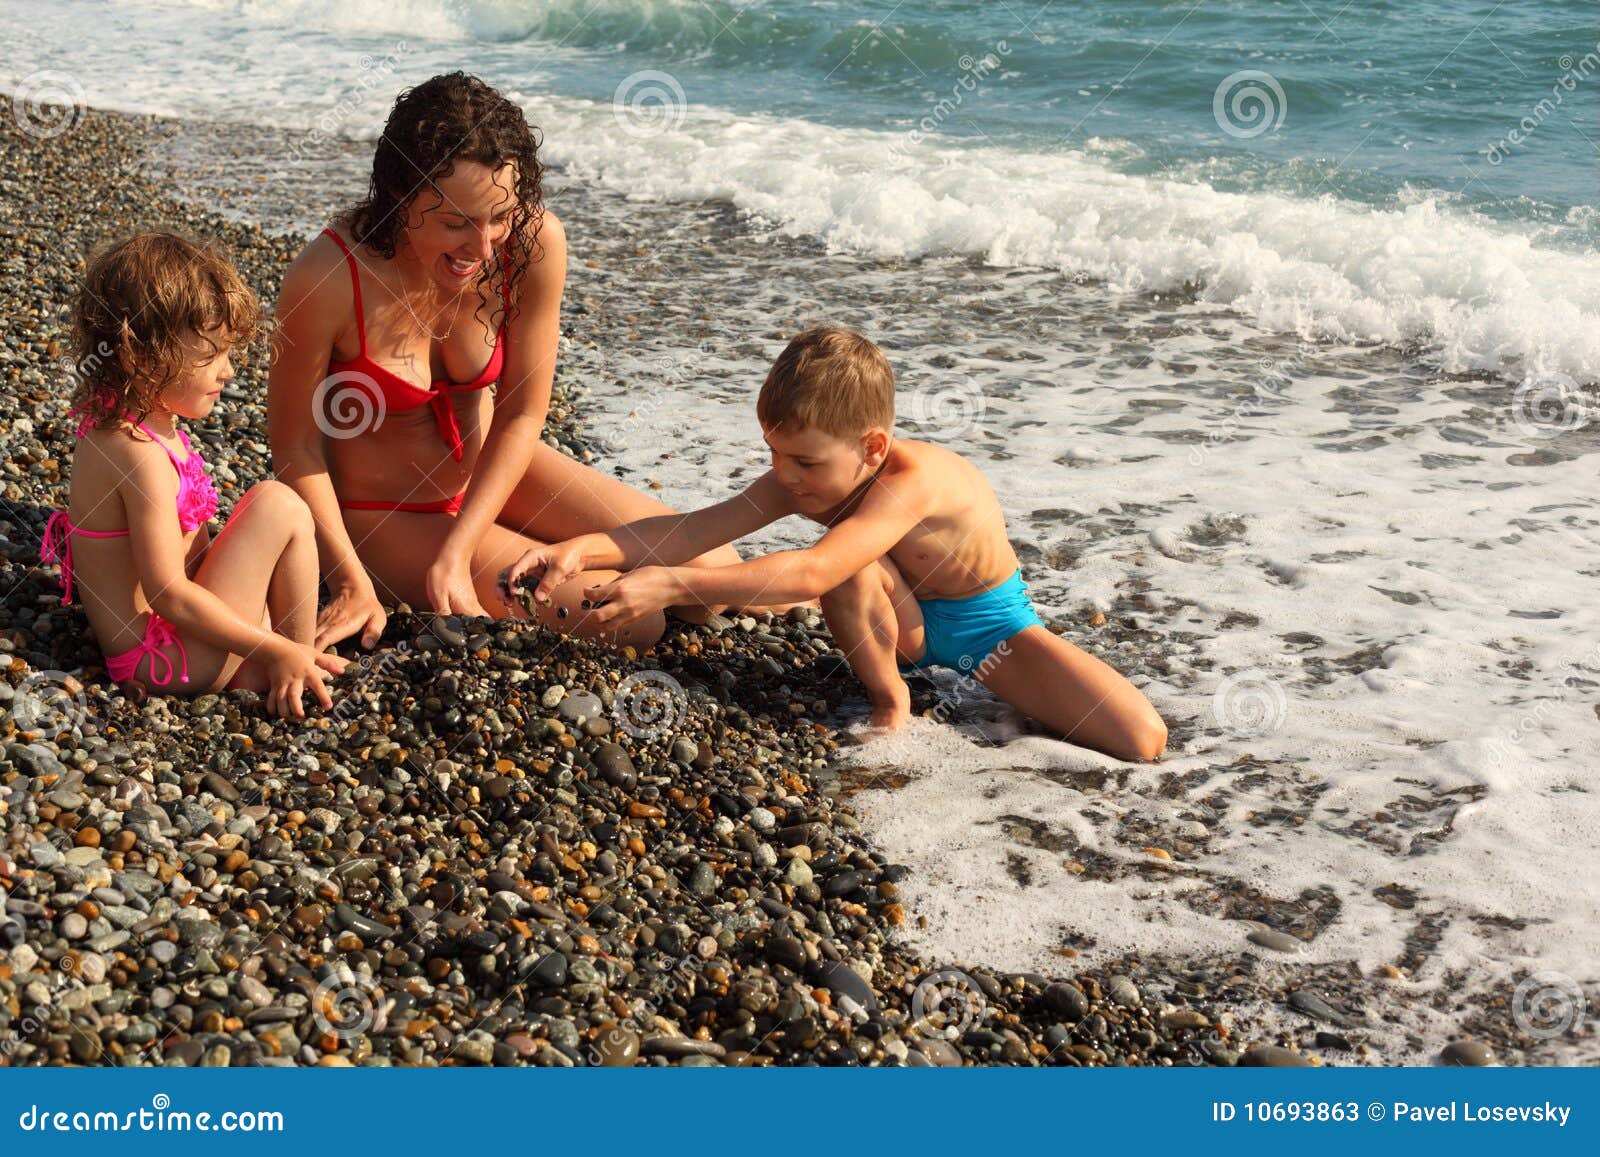 нудистский пляж с голыми детьми фото 71